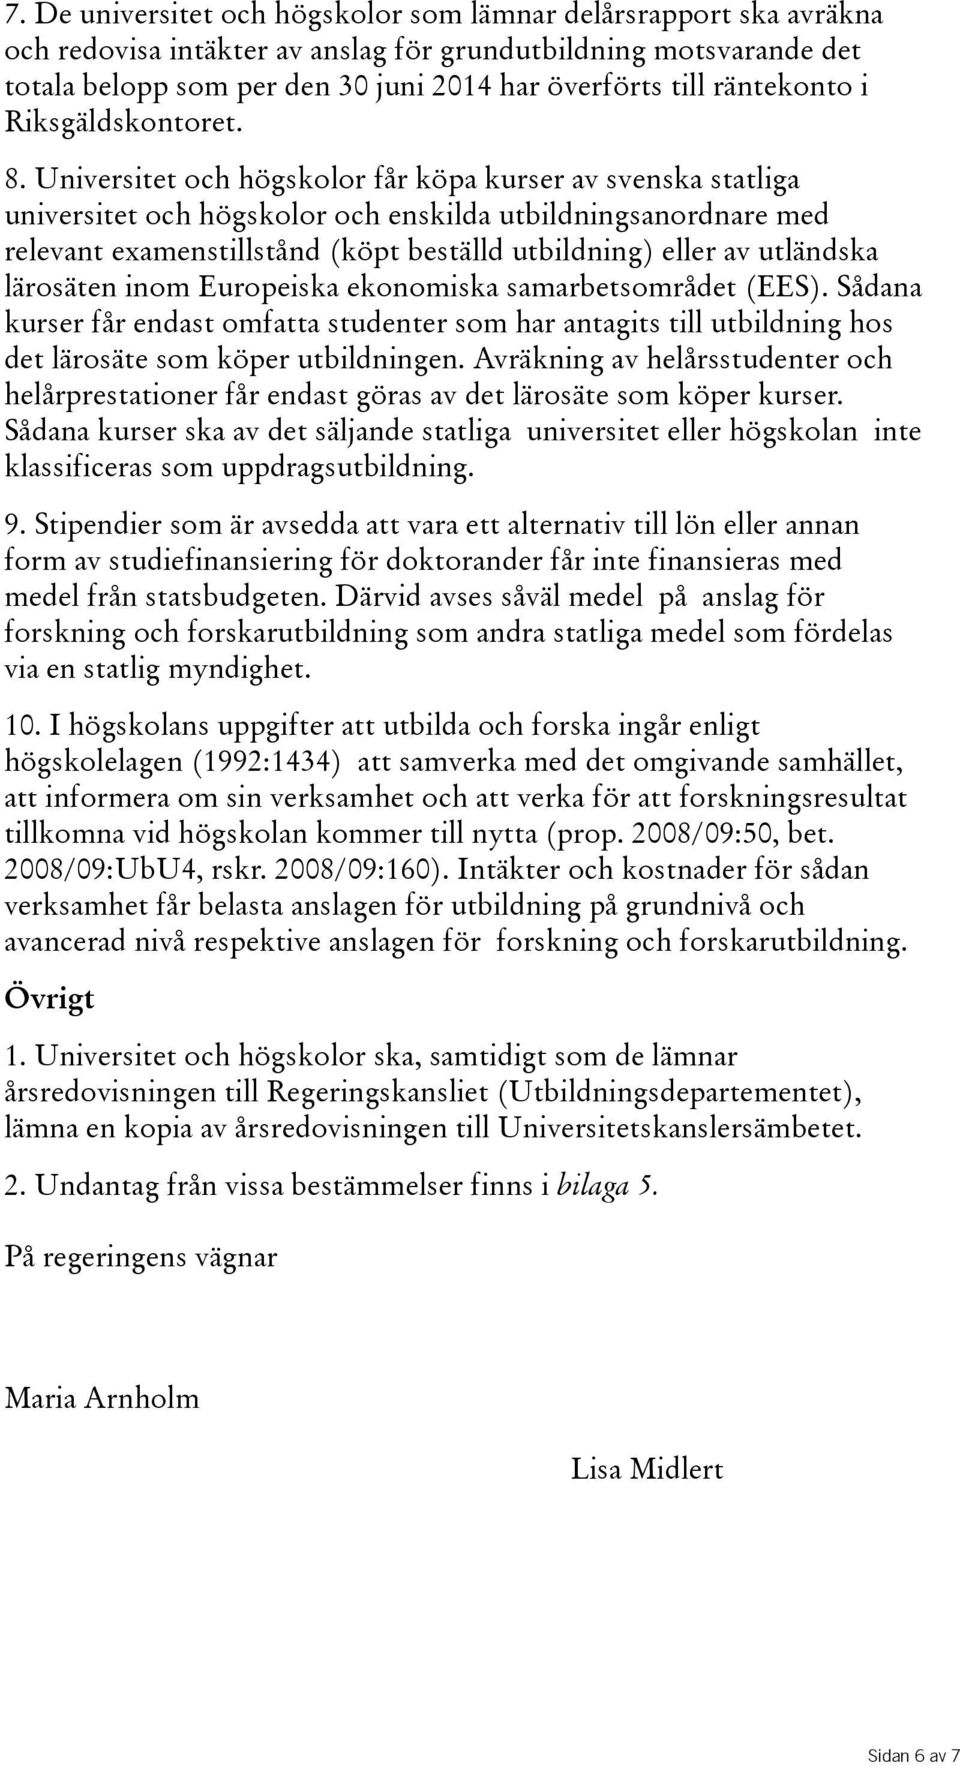 Universitet och högskolor får köpa kurser av svenska statliga universitet och högskolor och enskilda utbildningsanordnare med relevant examenstillstånd(köpt beställd utbildning) eller av utländska